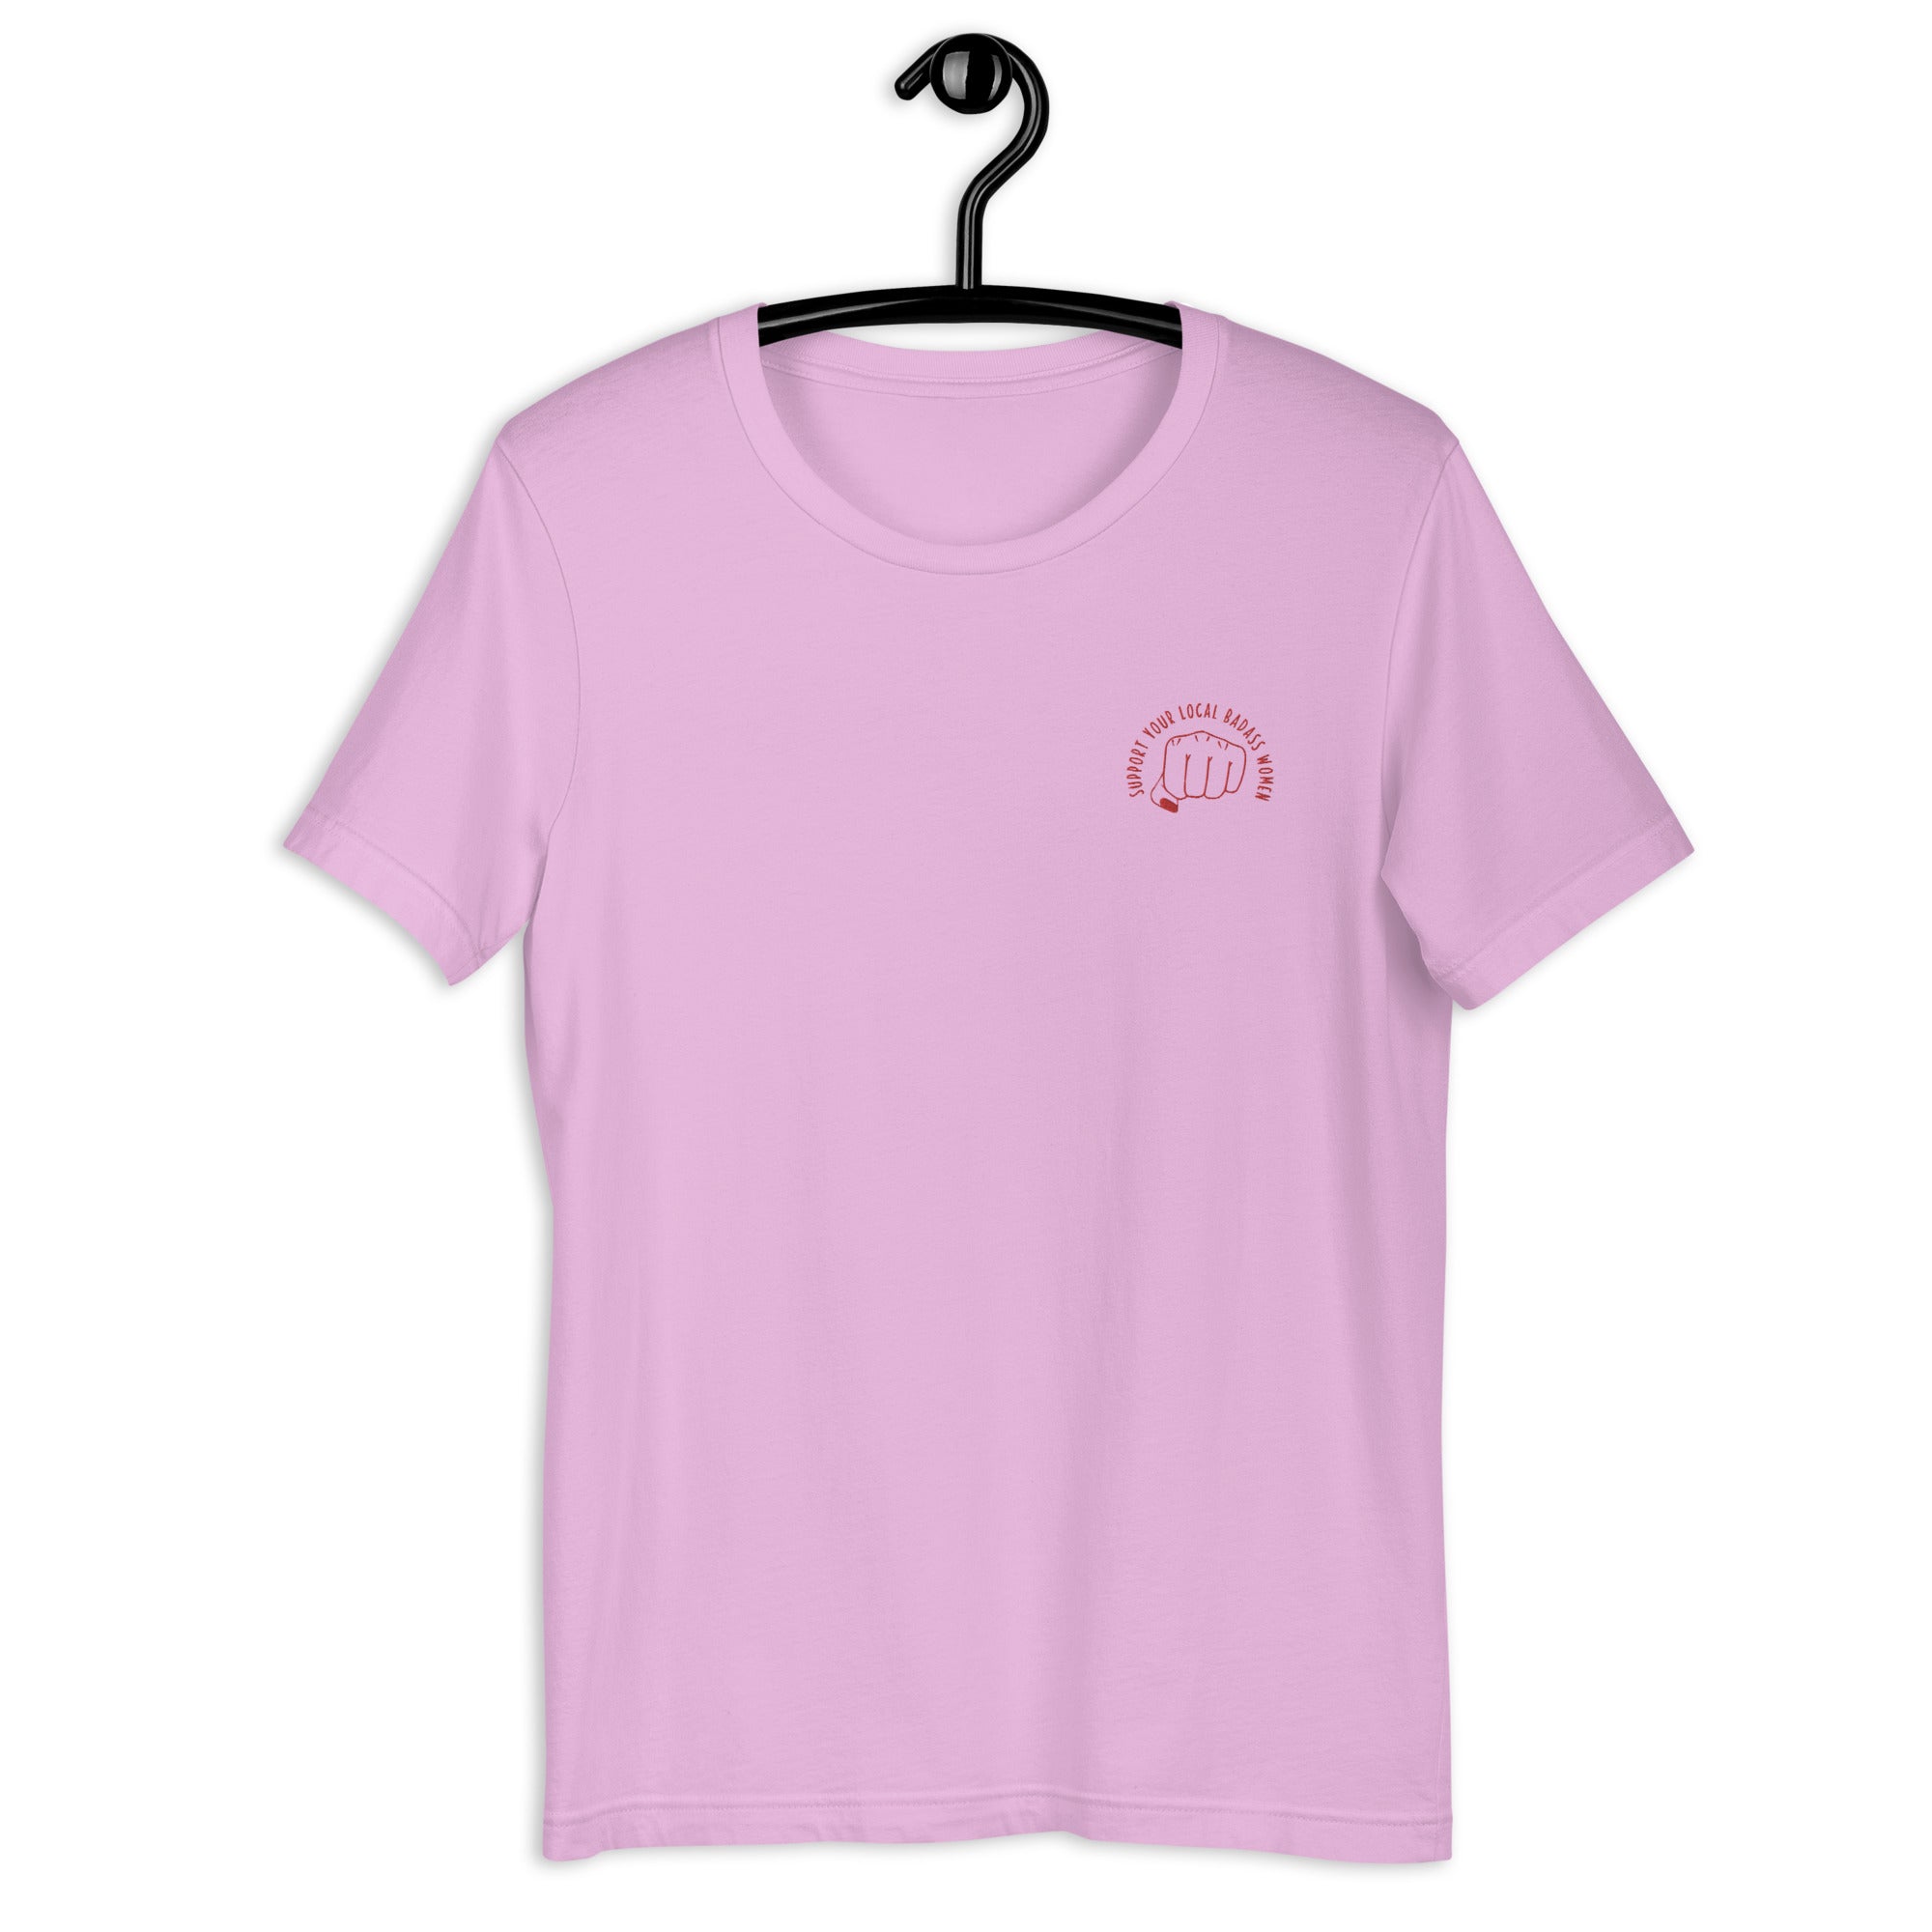 Support Women t-shirt